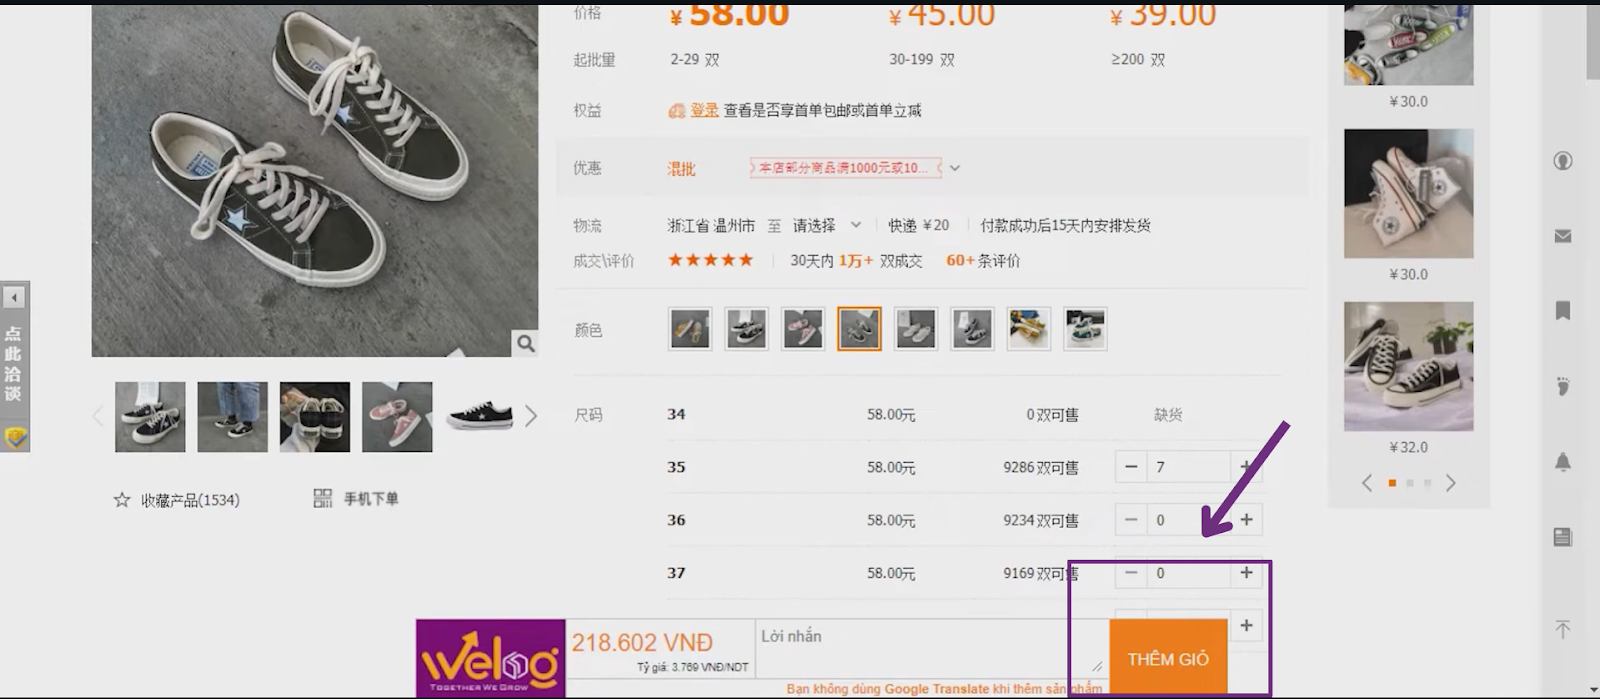 Chọn “Thêm giỏ” để order hàng Taobao sau khi đã chọn được sản phẩm ưng ý